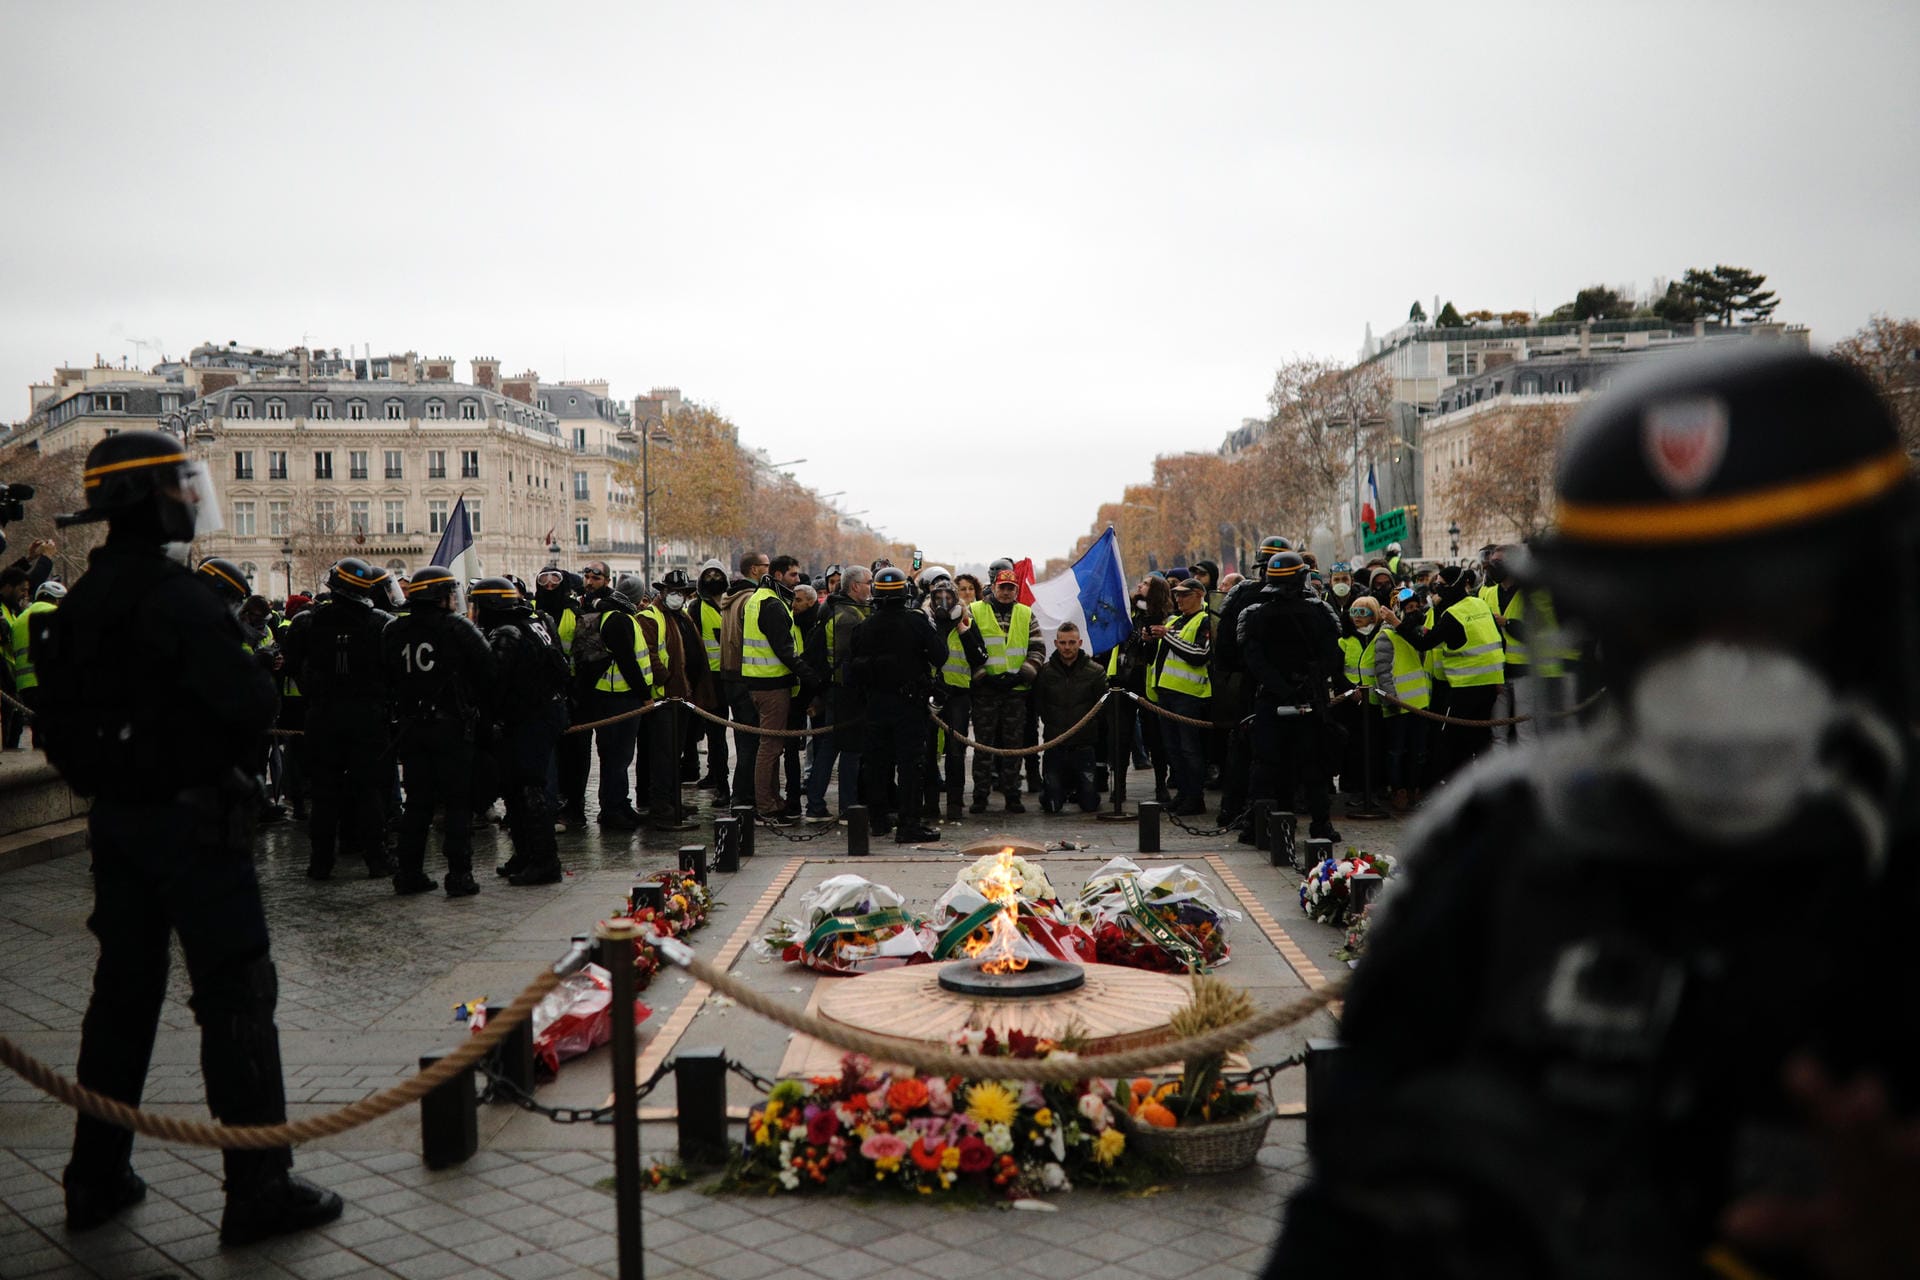 Sicherheitskräfte beaufsichtigen die Demonstranten am Triumphbogen in Paris: Hier ist die Stimmung noch friedlich...